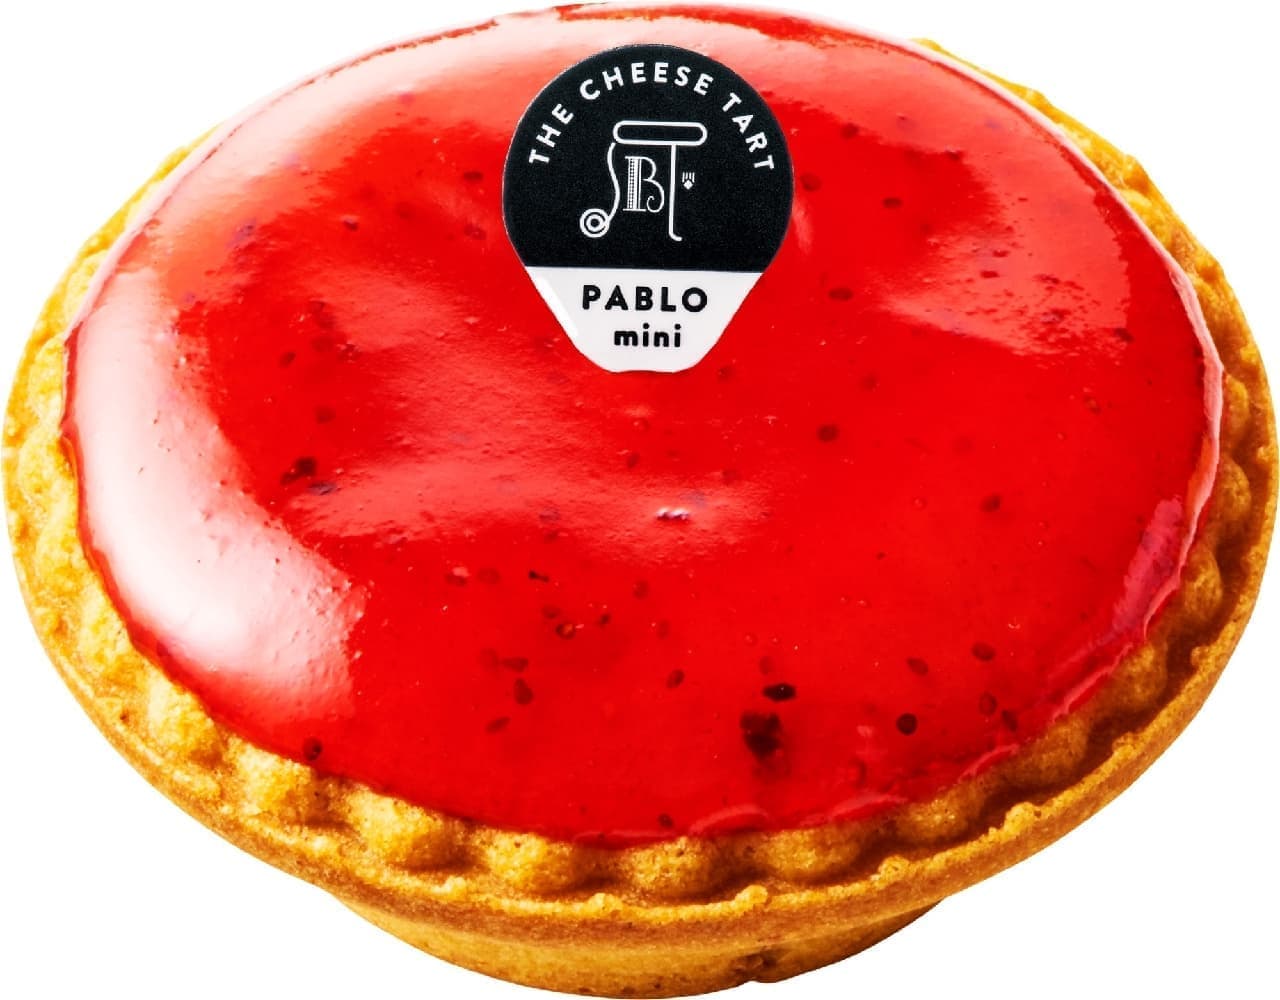 Bright red cheese tart "Pablo Mini-Melting Strawberries"